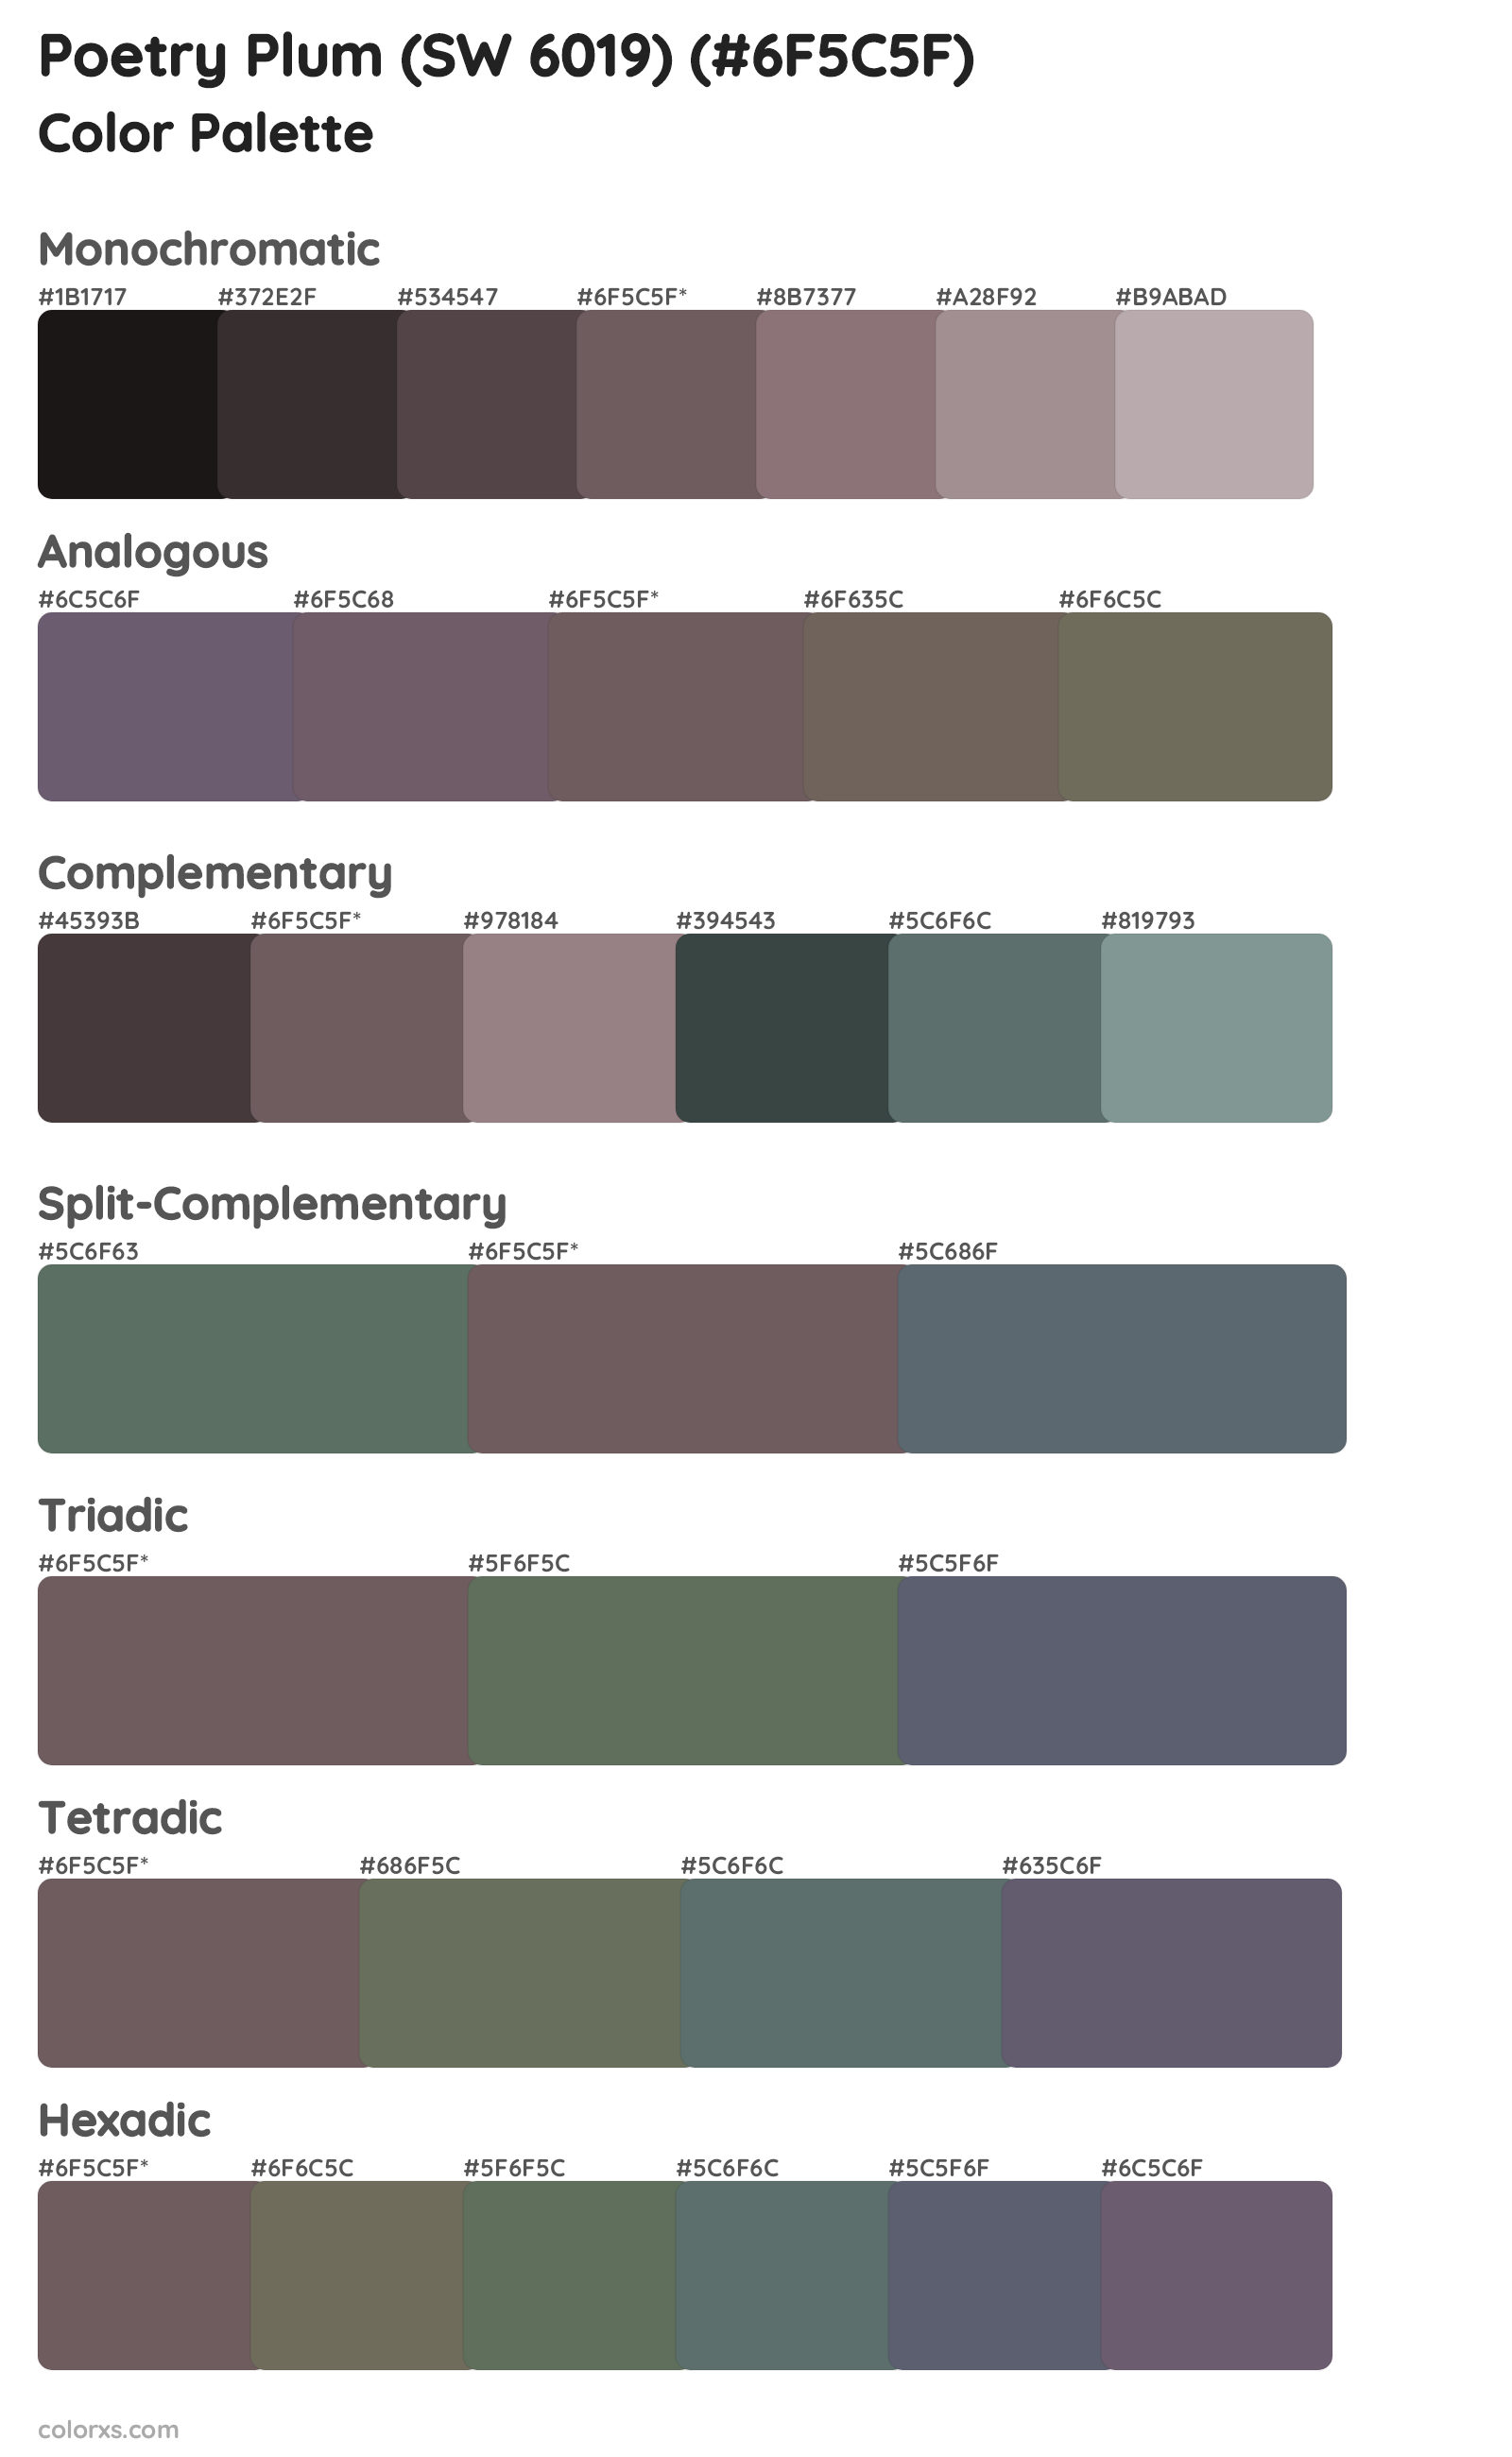 Poetry Plum (SW 6019) Color Scheme Palettes